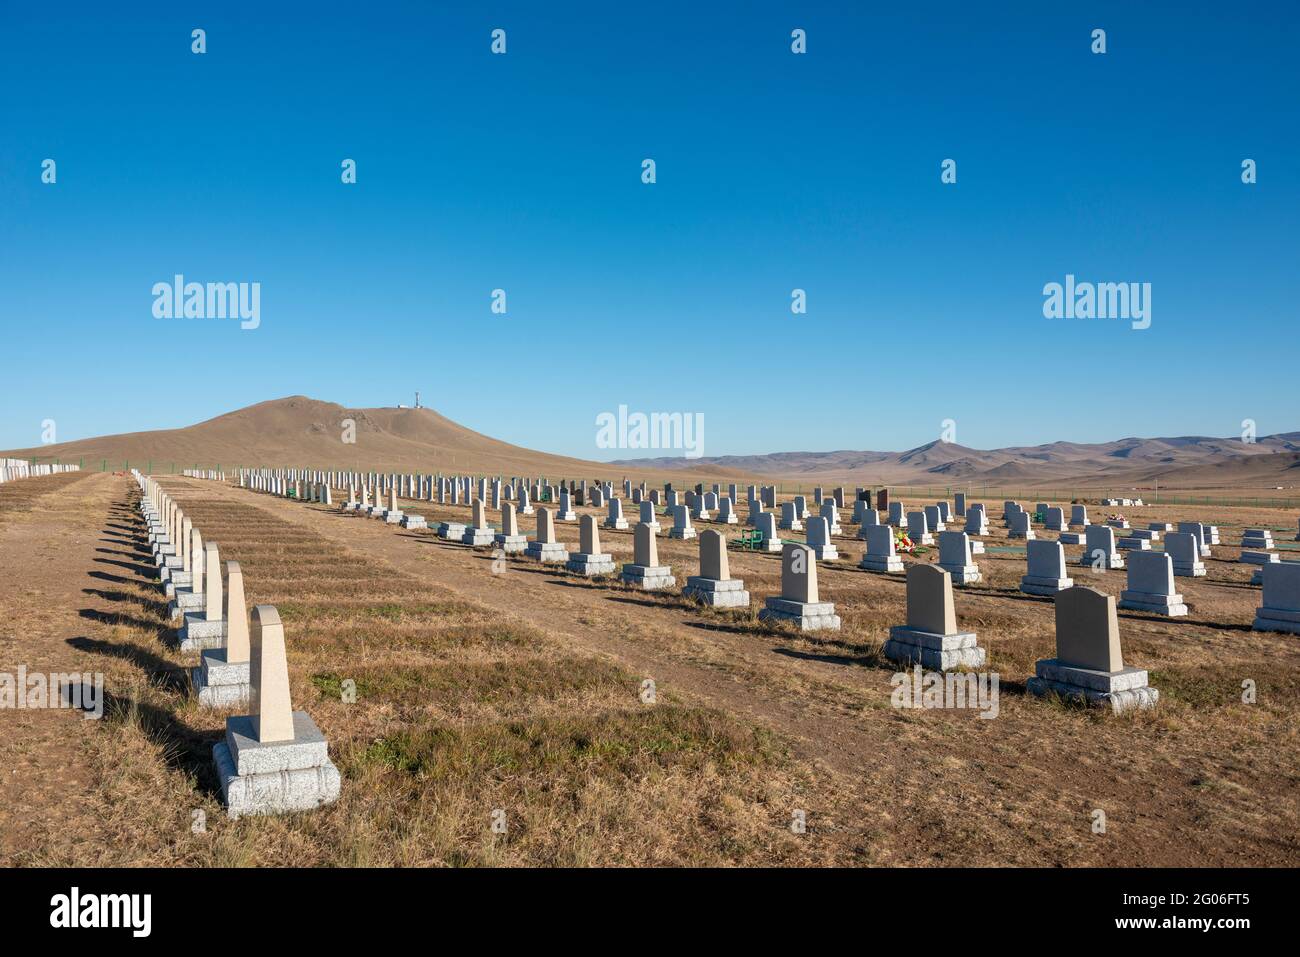 Cementerios Este y Oeste, Mongolia, el trabajo fue ejecutado por el “New Mind Group LLC”. Estos se pueden ver mientras se viaja en el Ferrocarril Transiberiano. Foto de stock